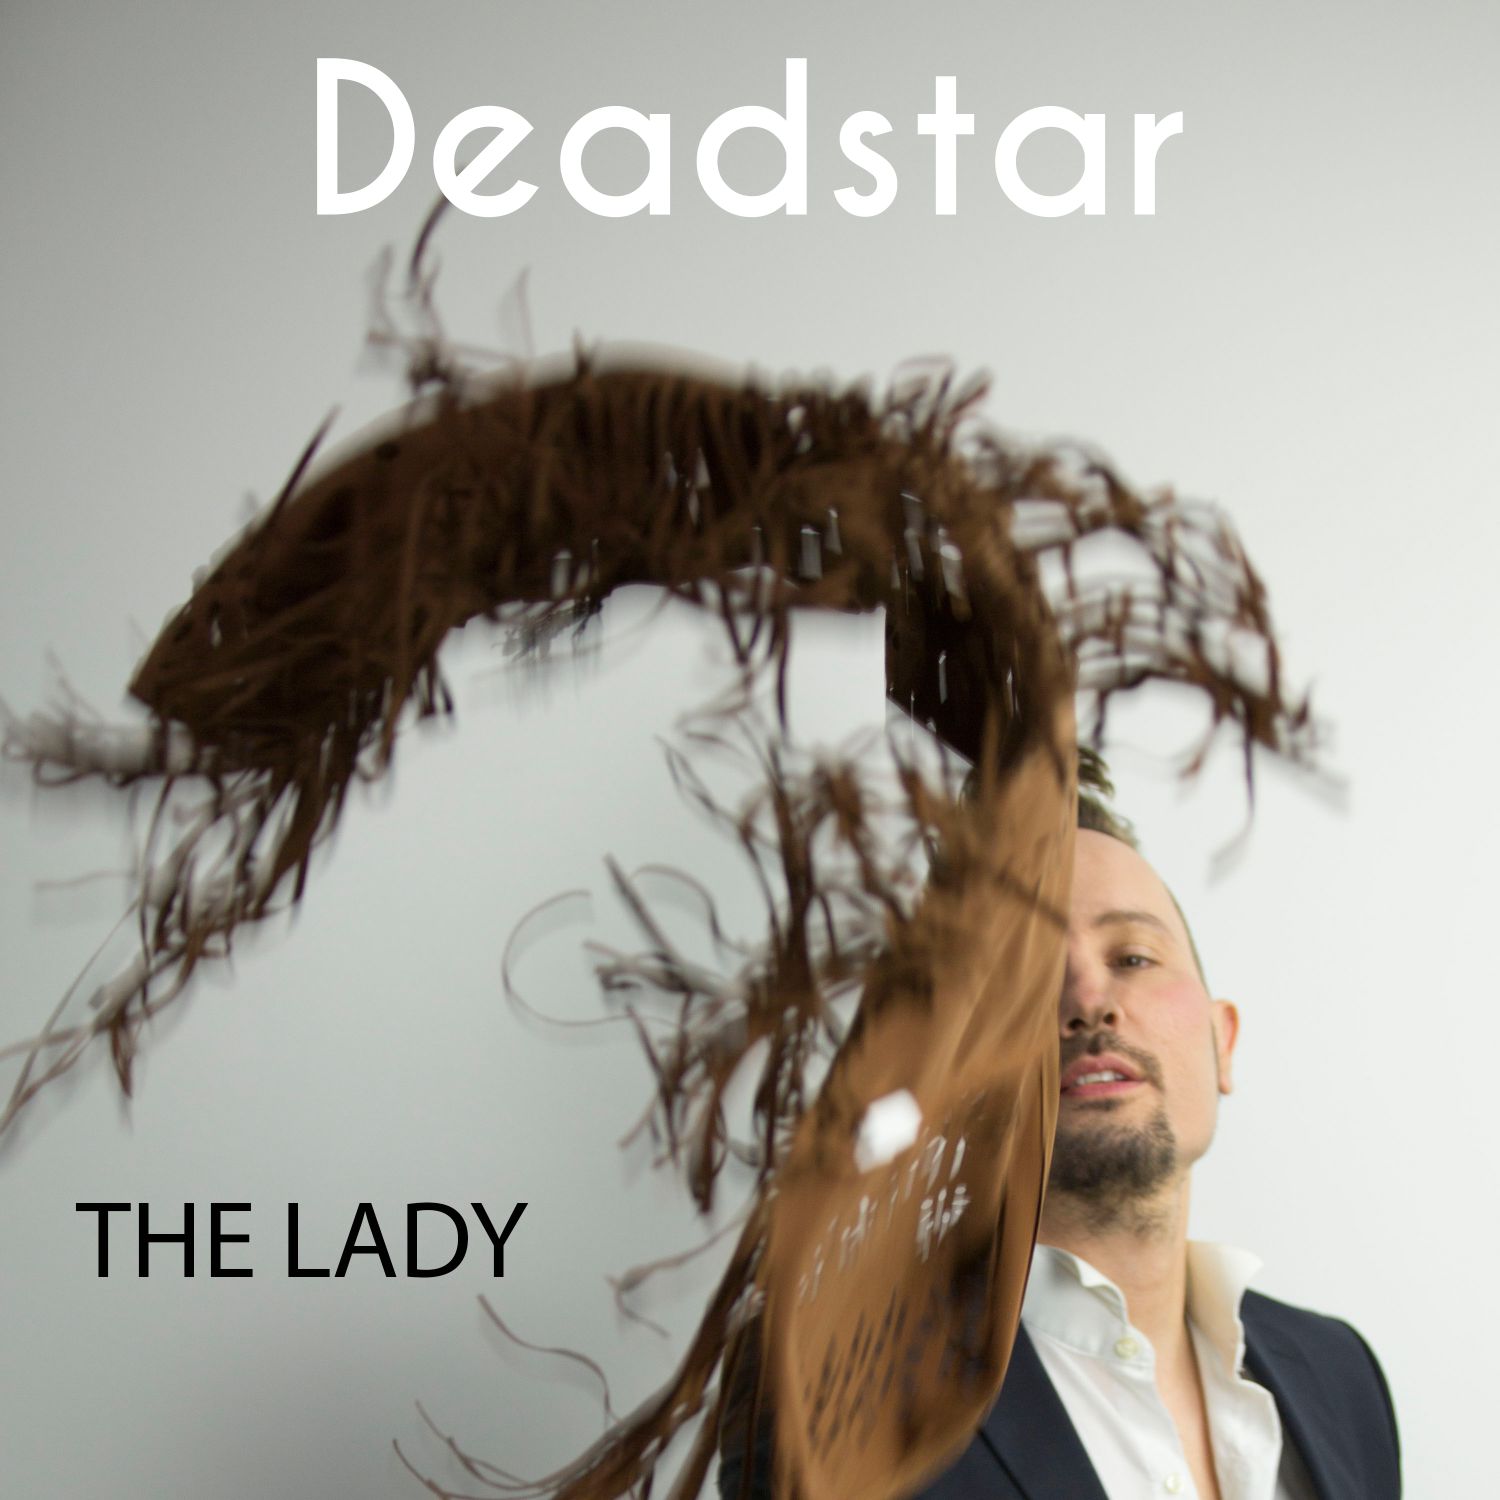  Deadstar: disponibile in digital download e streaming il singolo “The Lady” – VIDEOCLIP